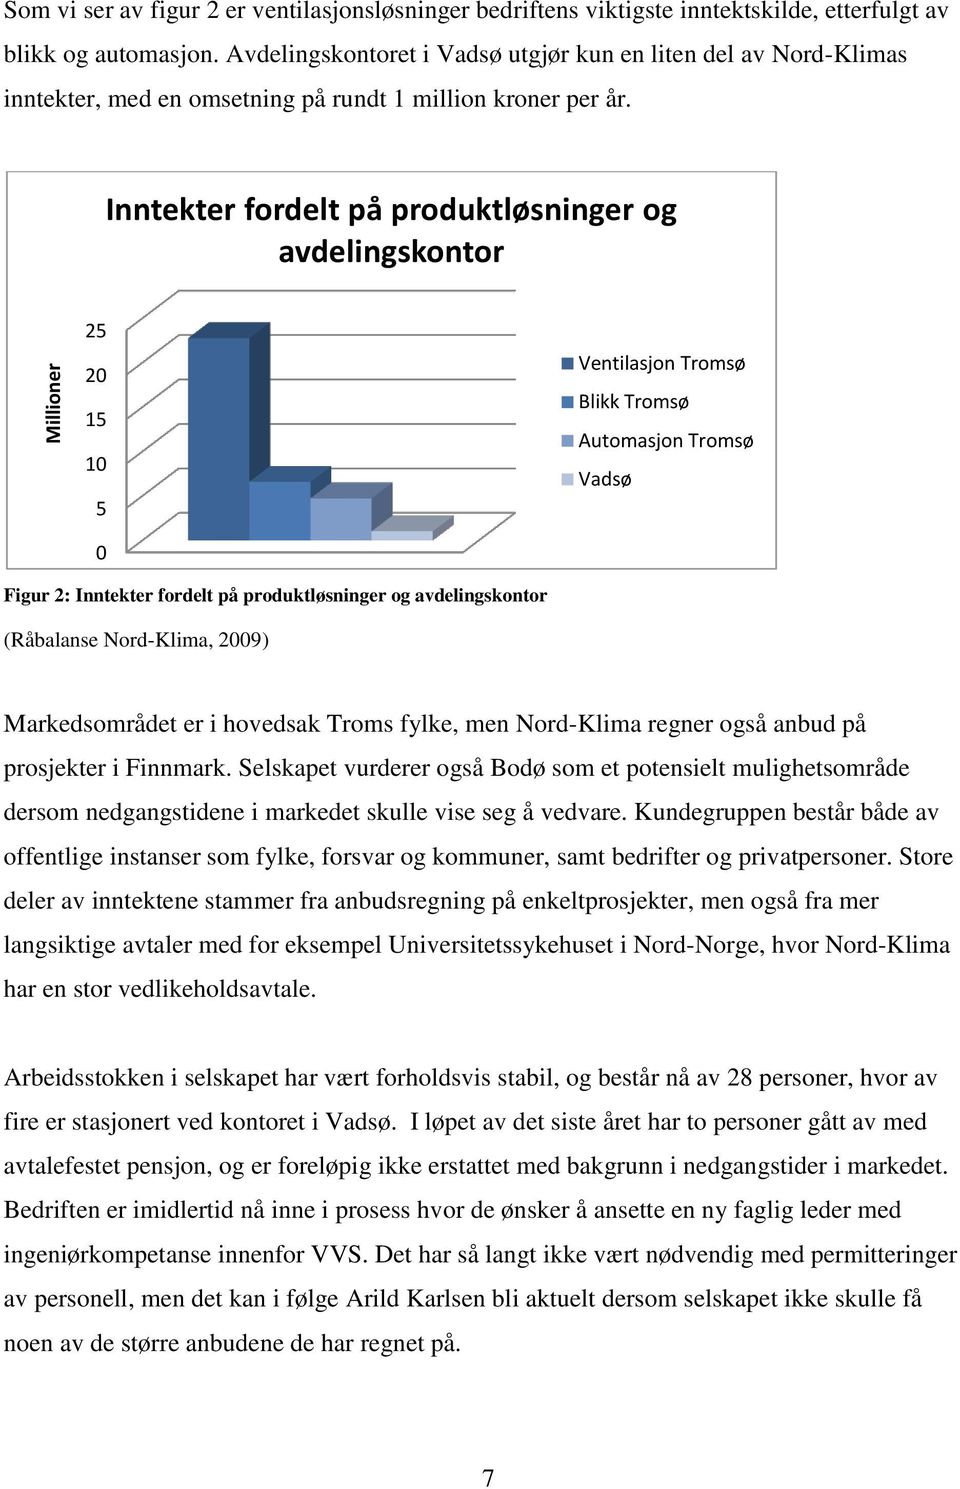 Inntekter fordelt på produktløsninger og avdelingskontor 25 20 15 10 5 0 Ventilasjon Tromsø Blikk Tromsø Automasjon Tromsø Vadsø Figur 2: Inntekter fordelt på produktløsninger og avdelingskontor